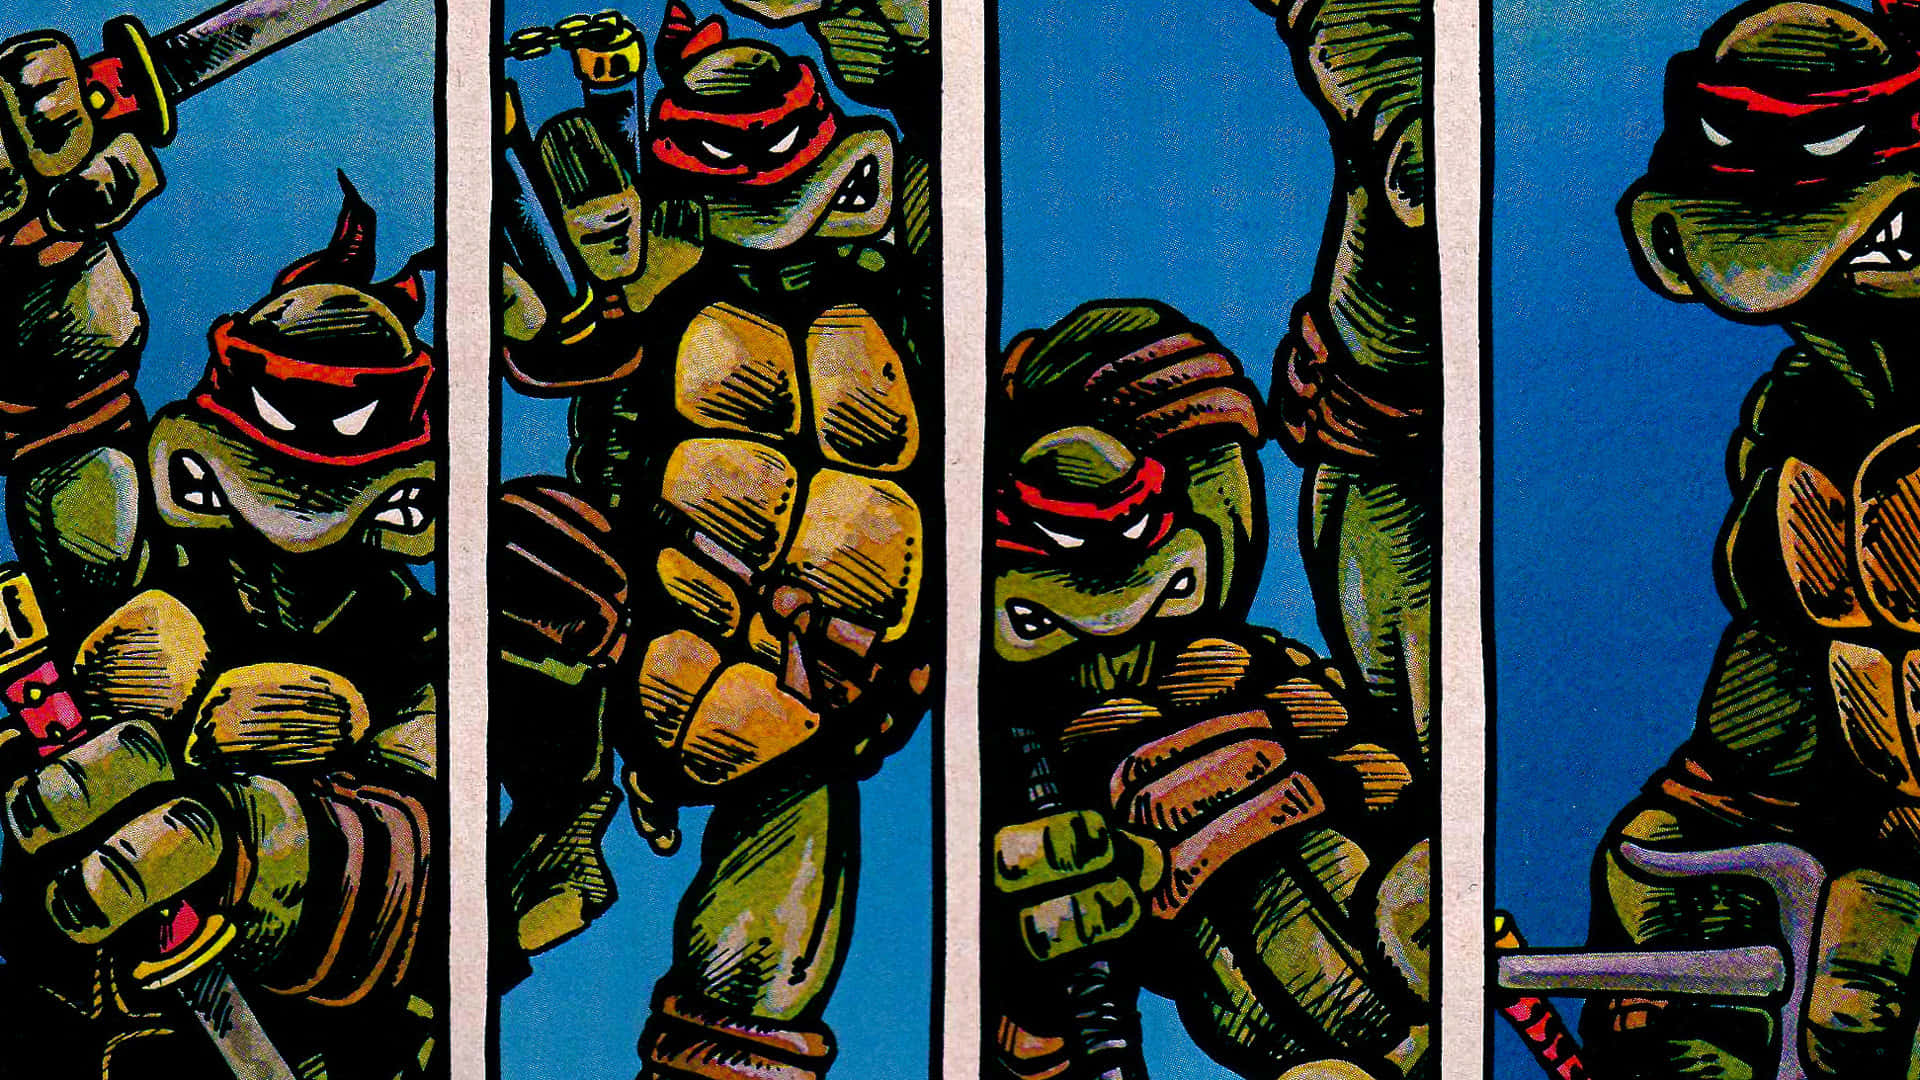 Teenage Mutant Ninja Turtles - The heroes in a half shell Wallpaper